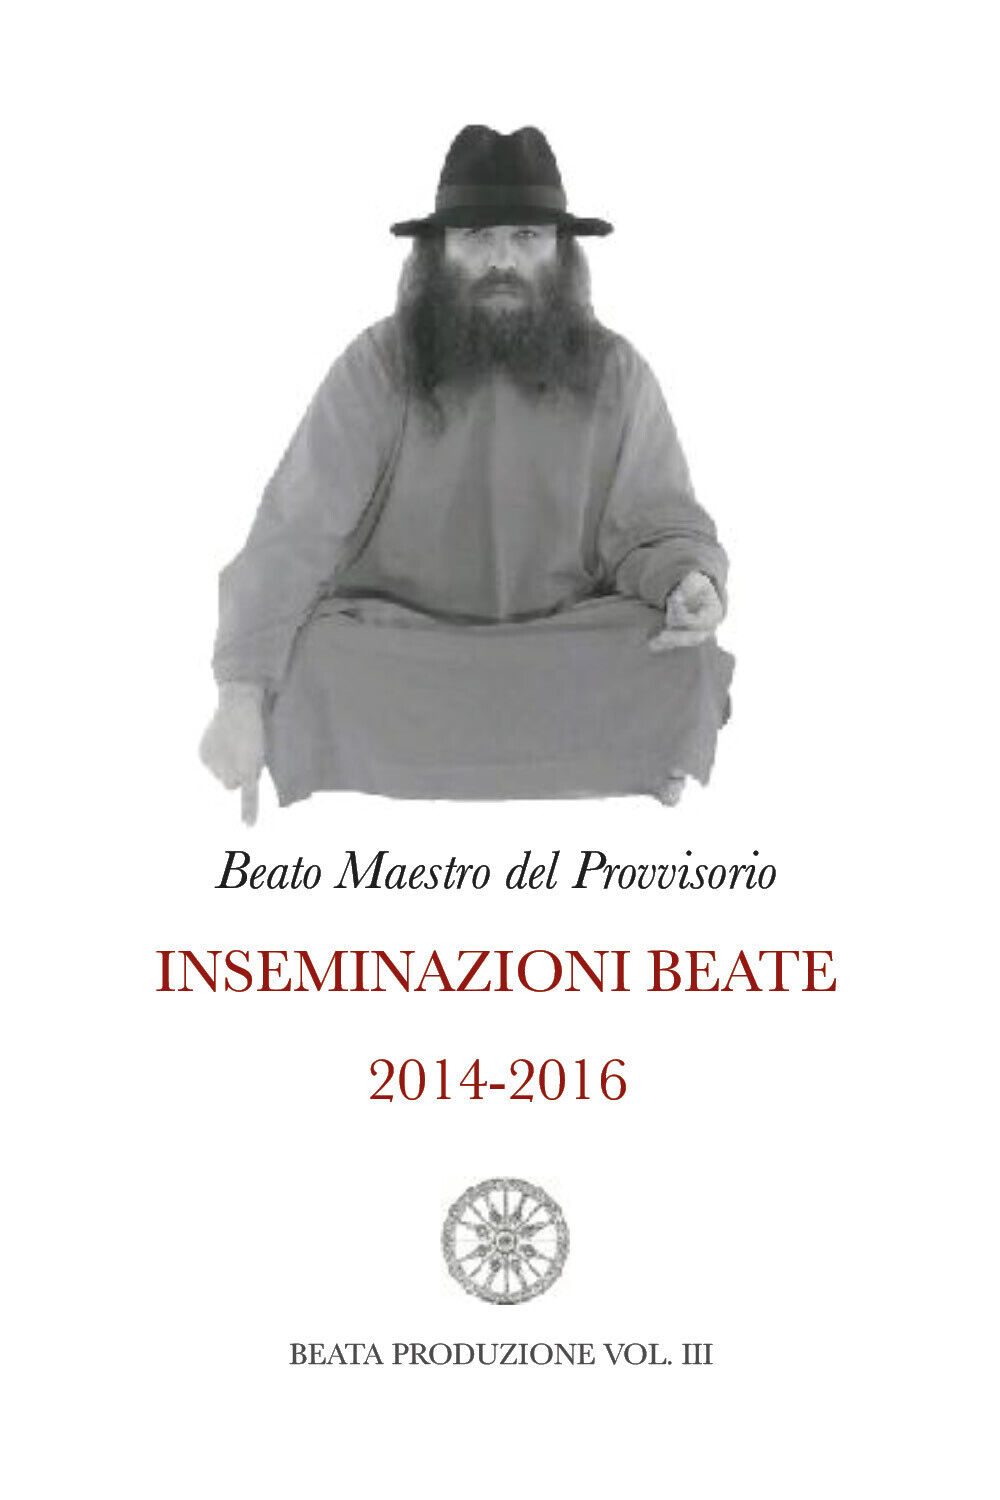 Inseminazioni Beate 2014-2016 VOL. III di Beato Maestro Del Provvisorio,  2021, 